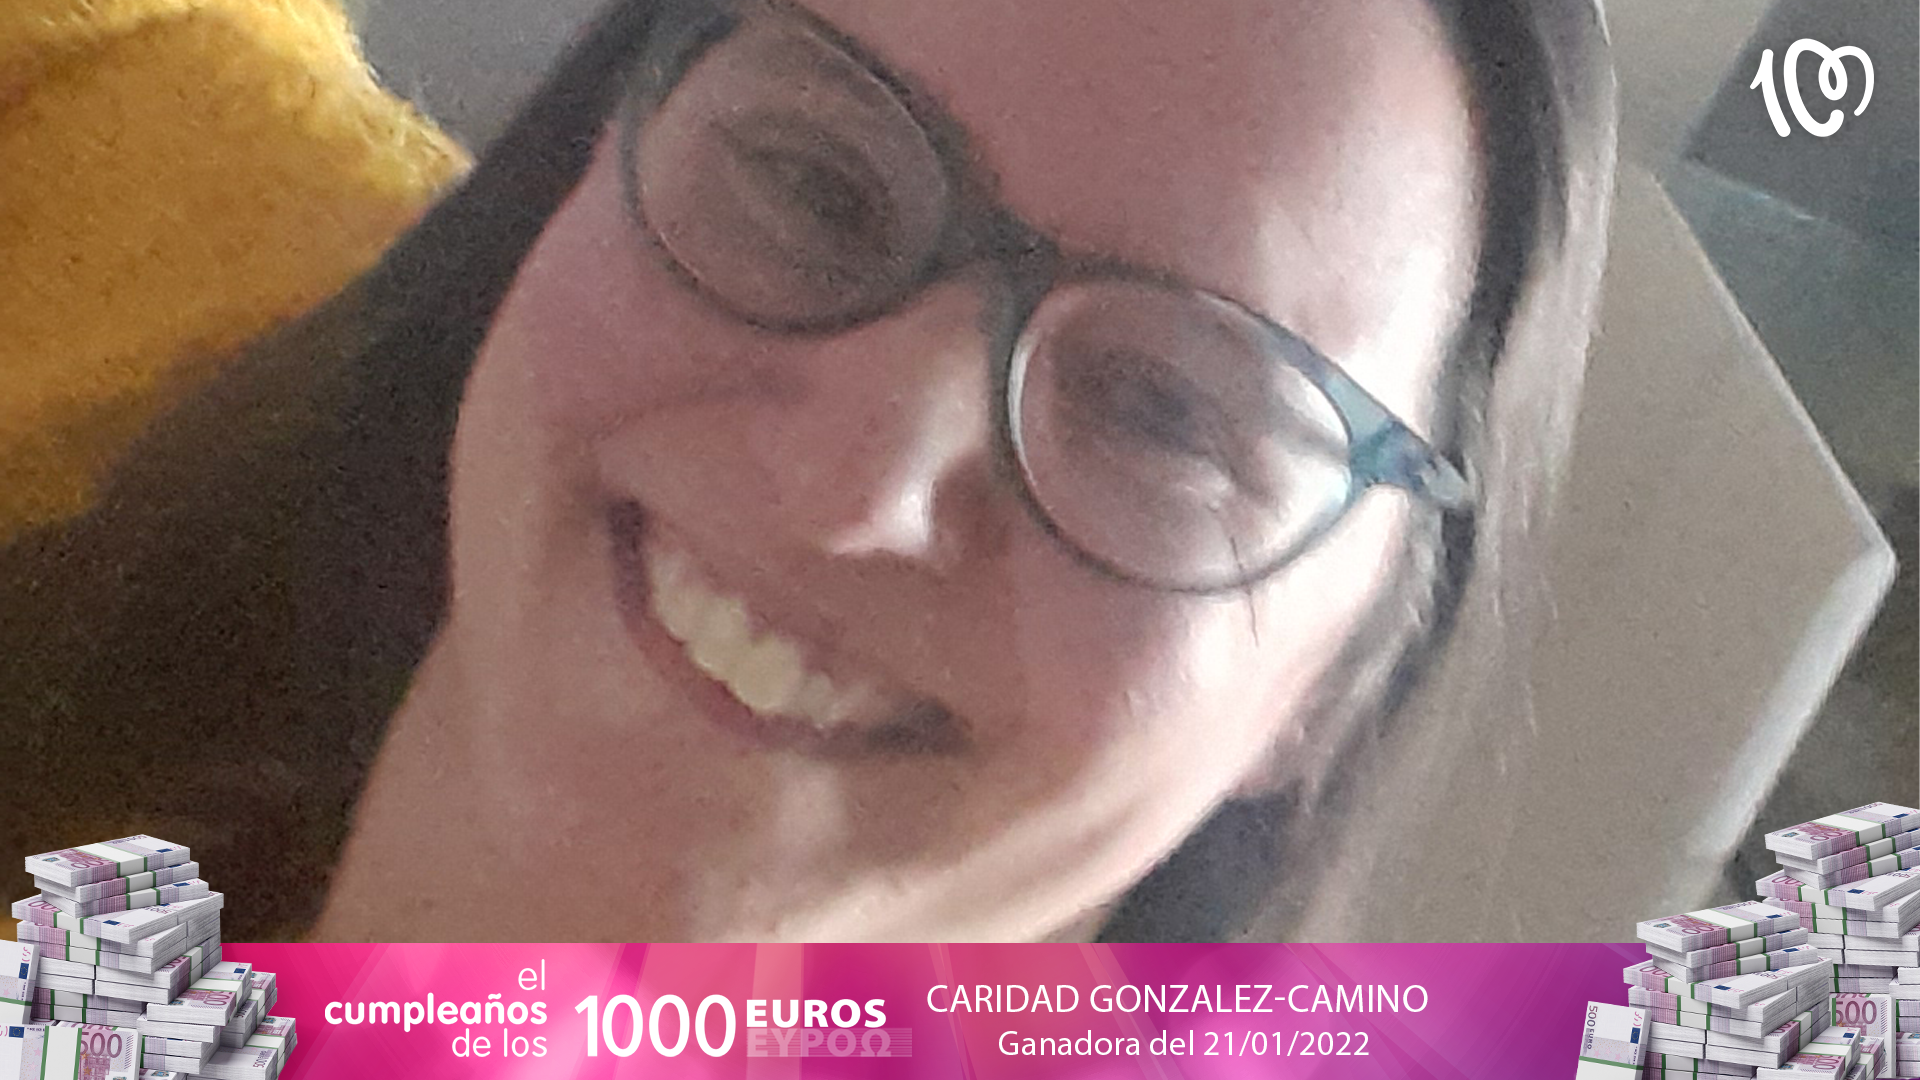 Cari, ganadora de 2.000 euros: "¡Sigo sin creérmelo!"